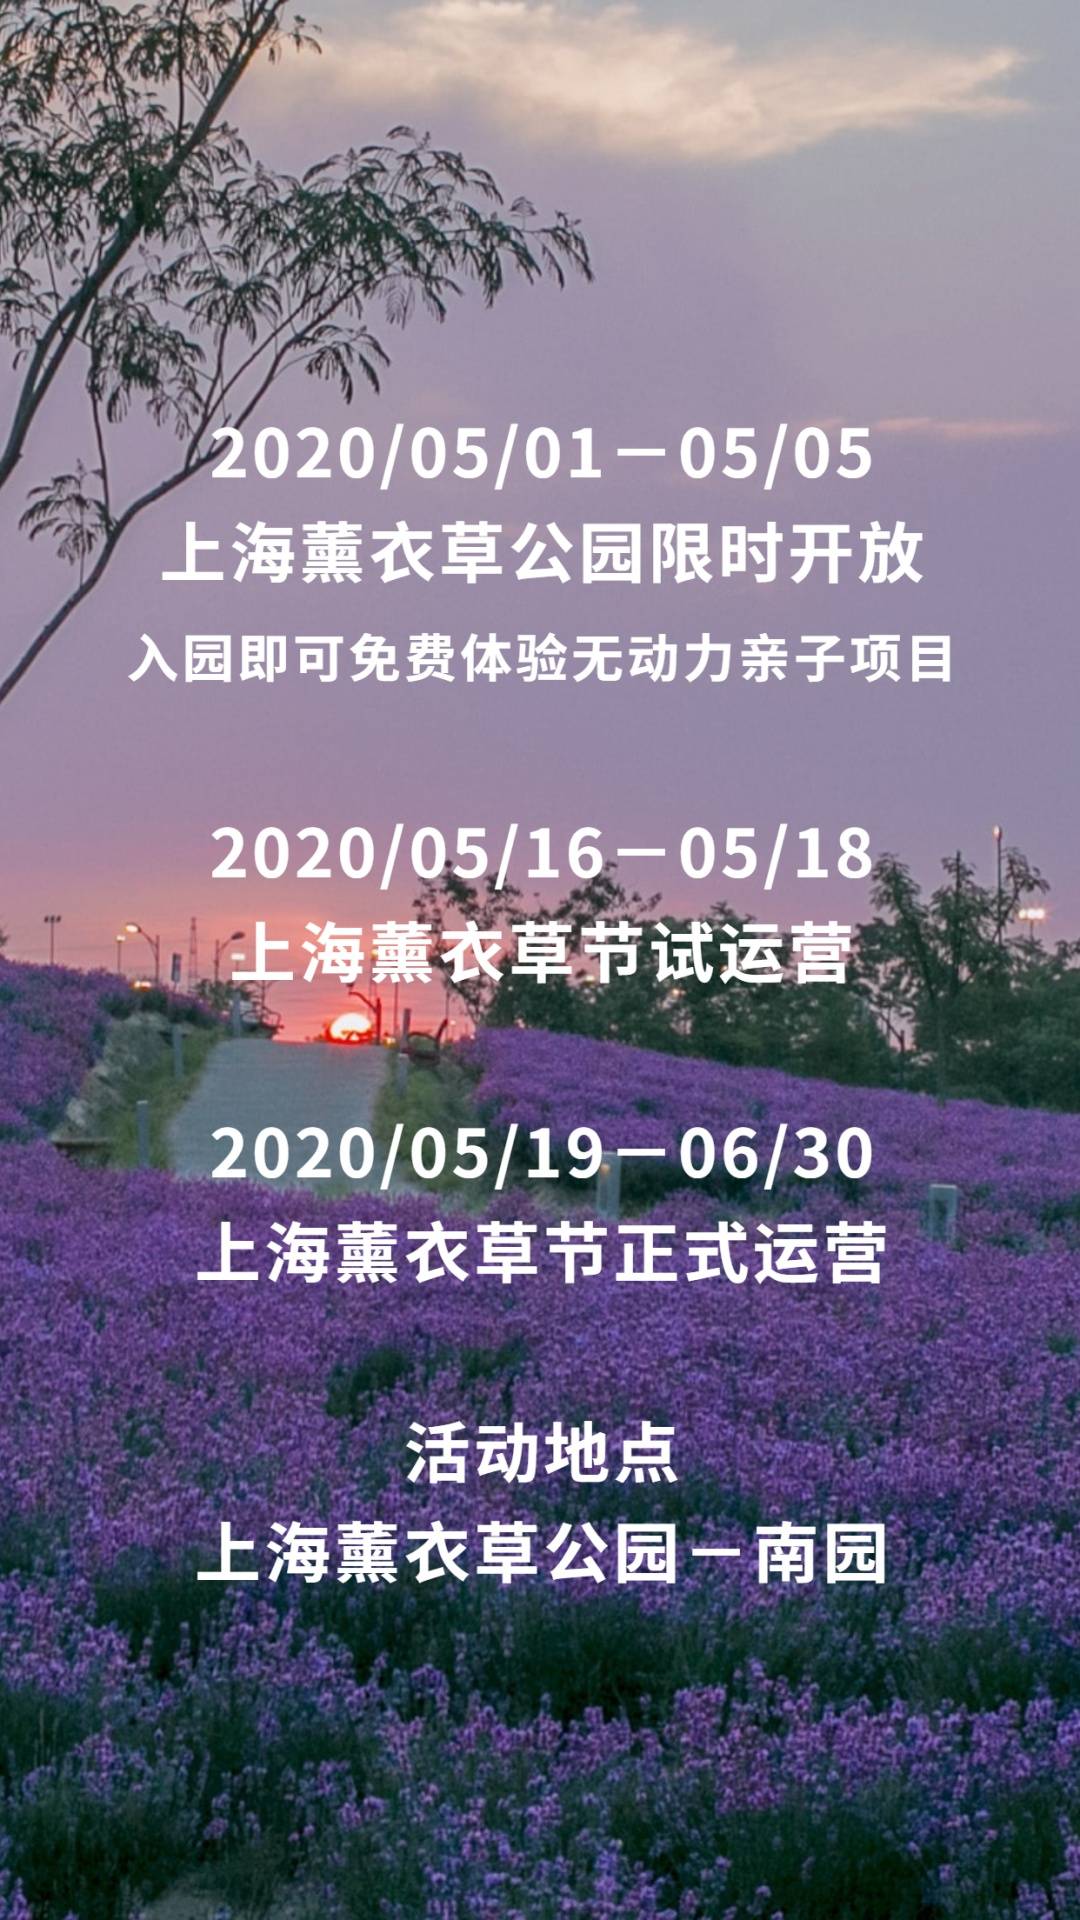 【上海薰衣草公园】 29元抢购平日单人门票！ 2020，上海薰衣草节要给你 360°的“春日体验”（5月16-6月30） ，不必远赴普罗旺斯，也能看见紫色的花海！在100亩梅丽雅特薰衣草花田里、在100000株不同品种的玫瑰花丛中、在20000㎡超大空间的休闲草坪上，畅快呼吸！